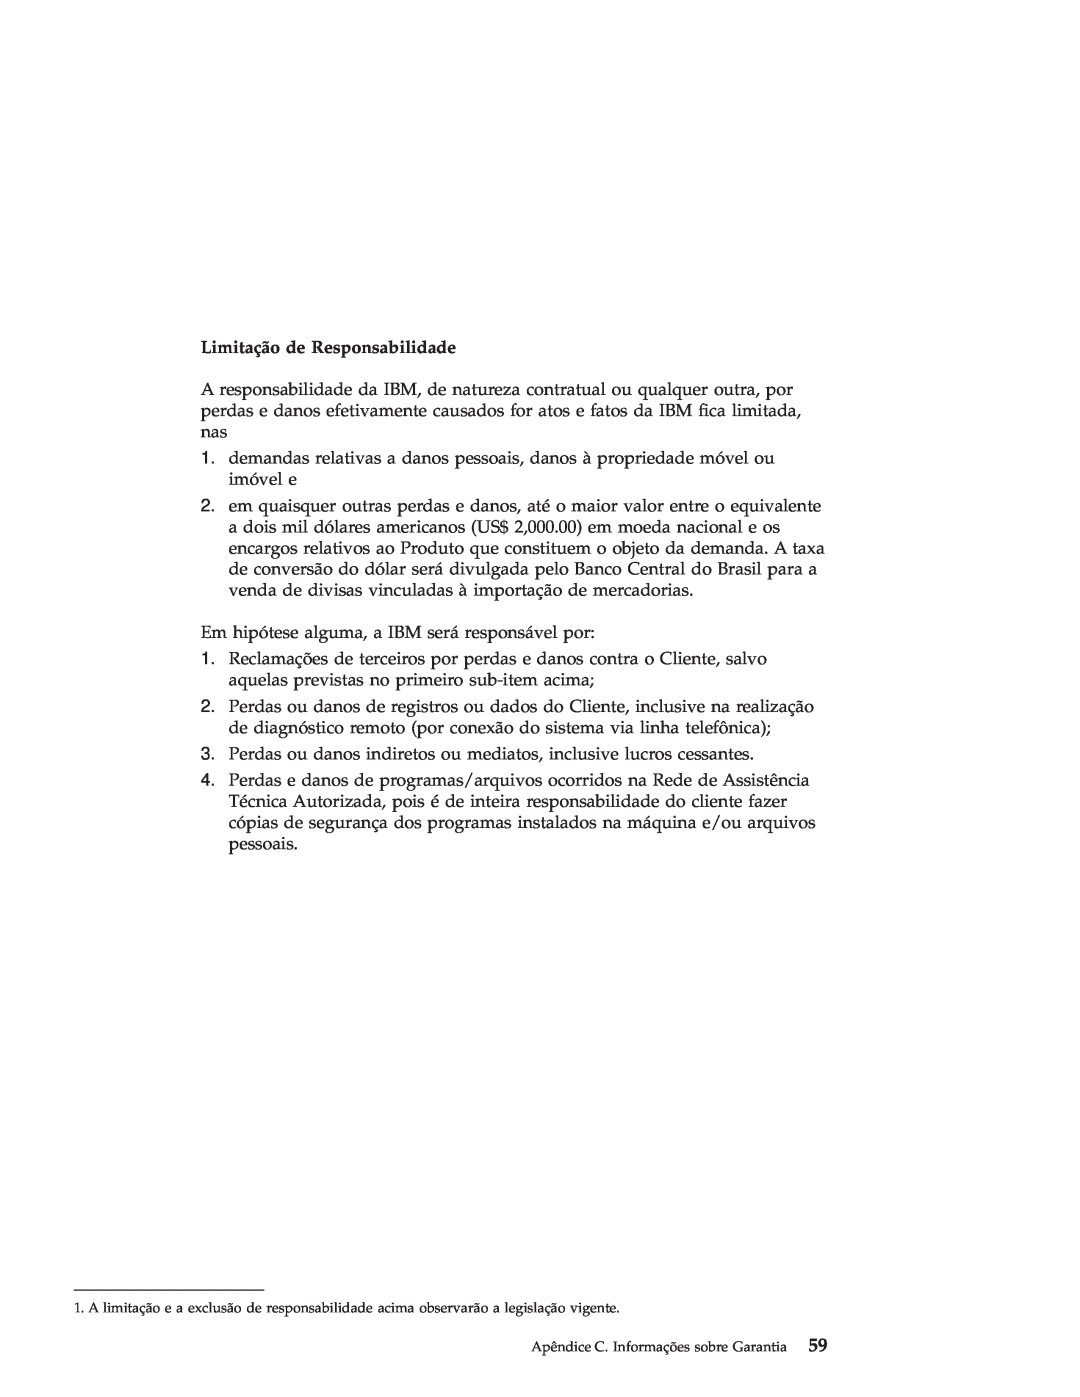 IBM R50 manual Limitação de Responsabilidade 